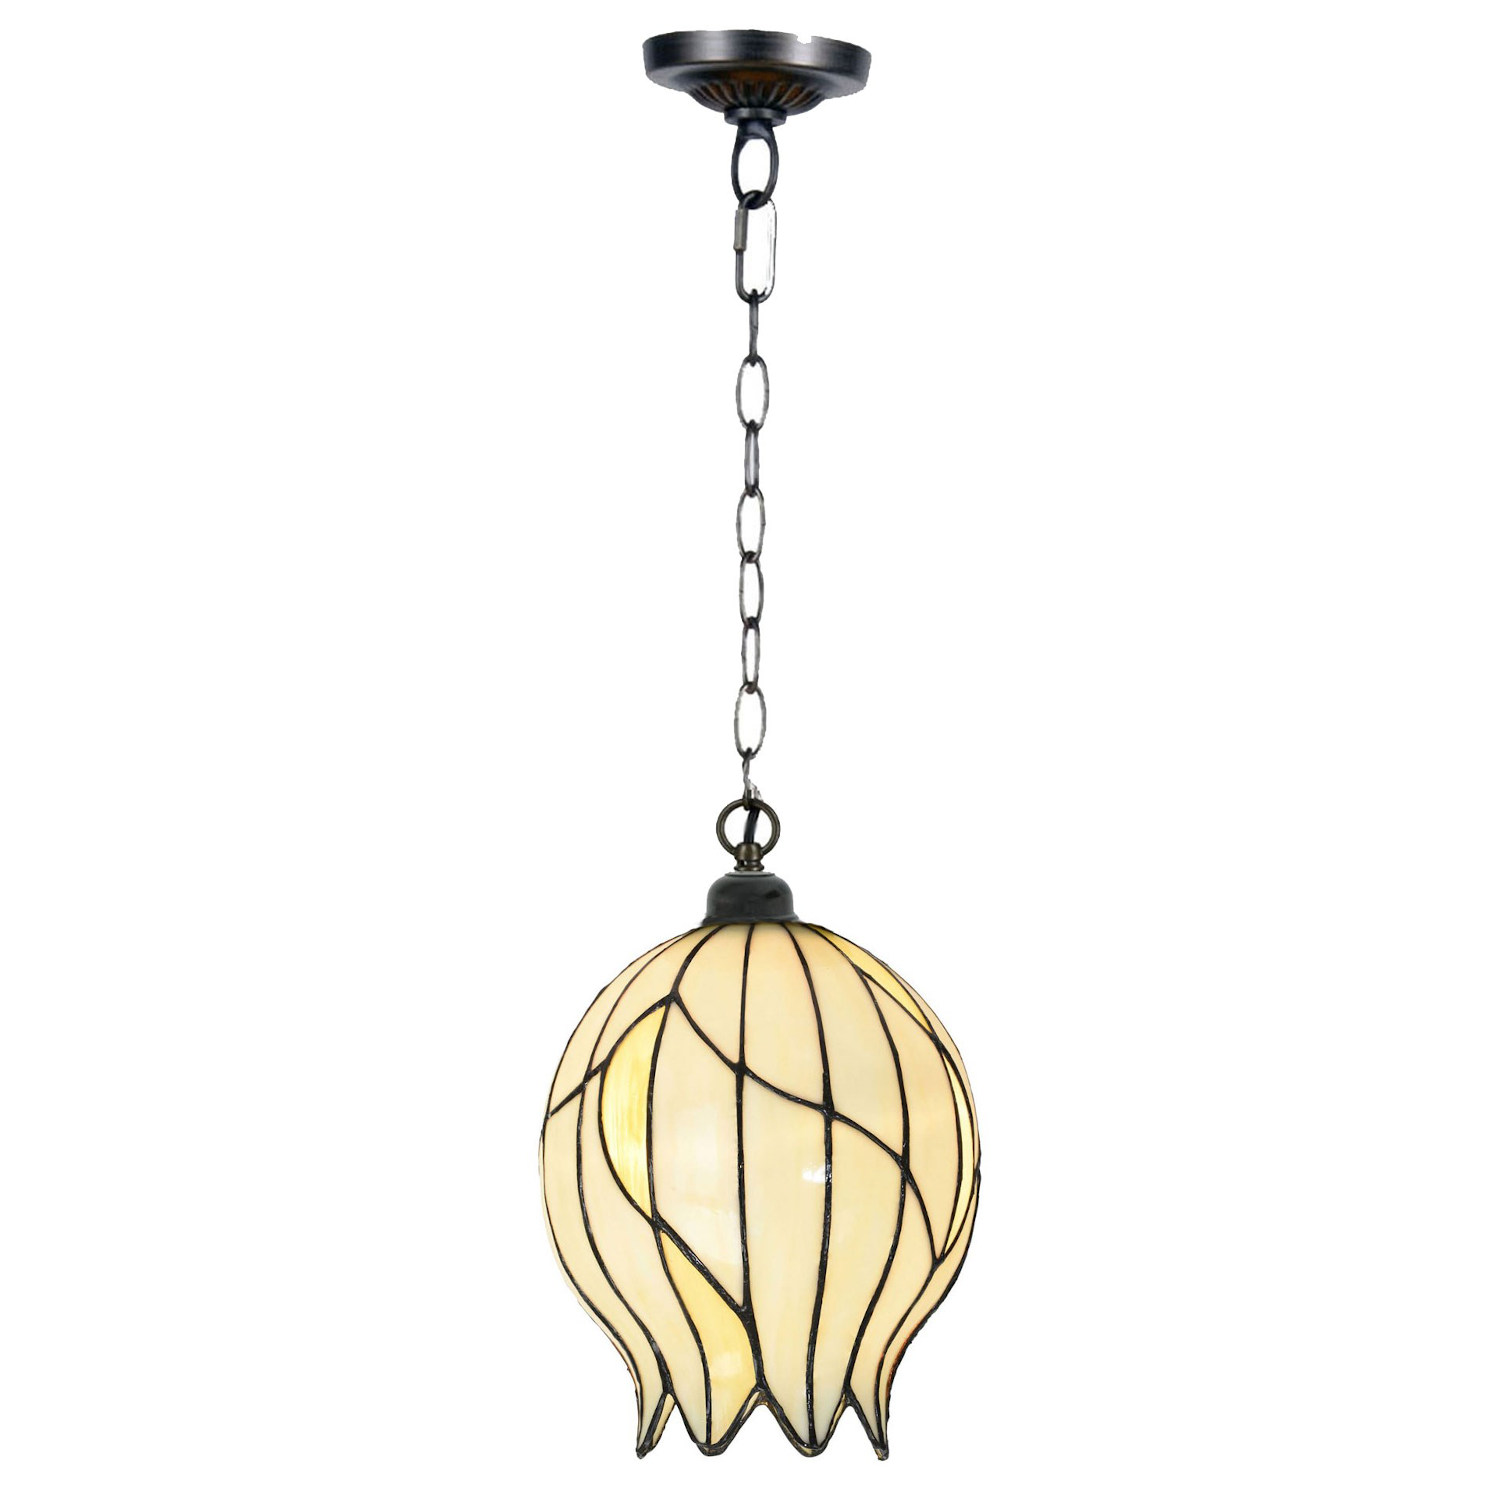 Tiffany-Hängeleuchte mit knospenförmigem Glasschirm: Die Tiffany-Lampe mit Ketten-Aufhängung